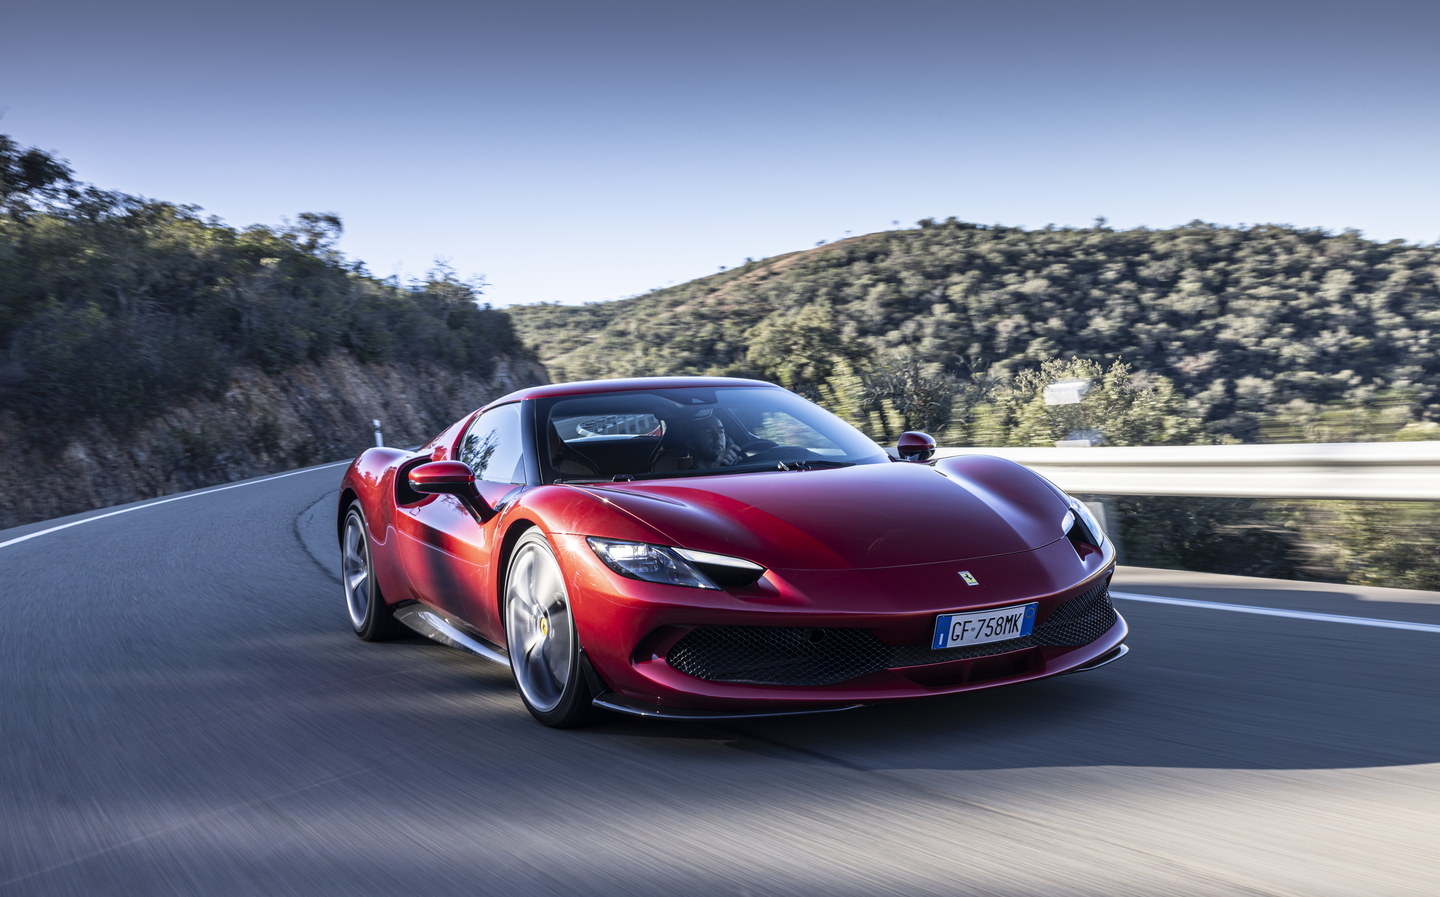 Ferrari confirms electric car plans but will continue producing V6, V8